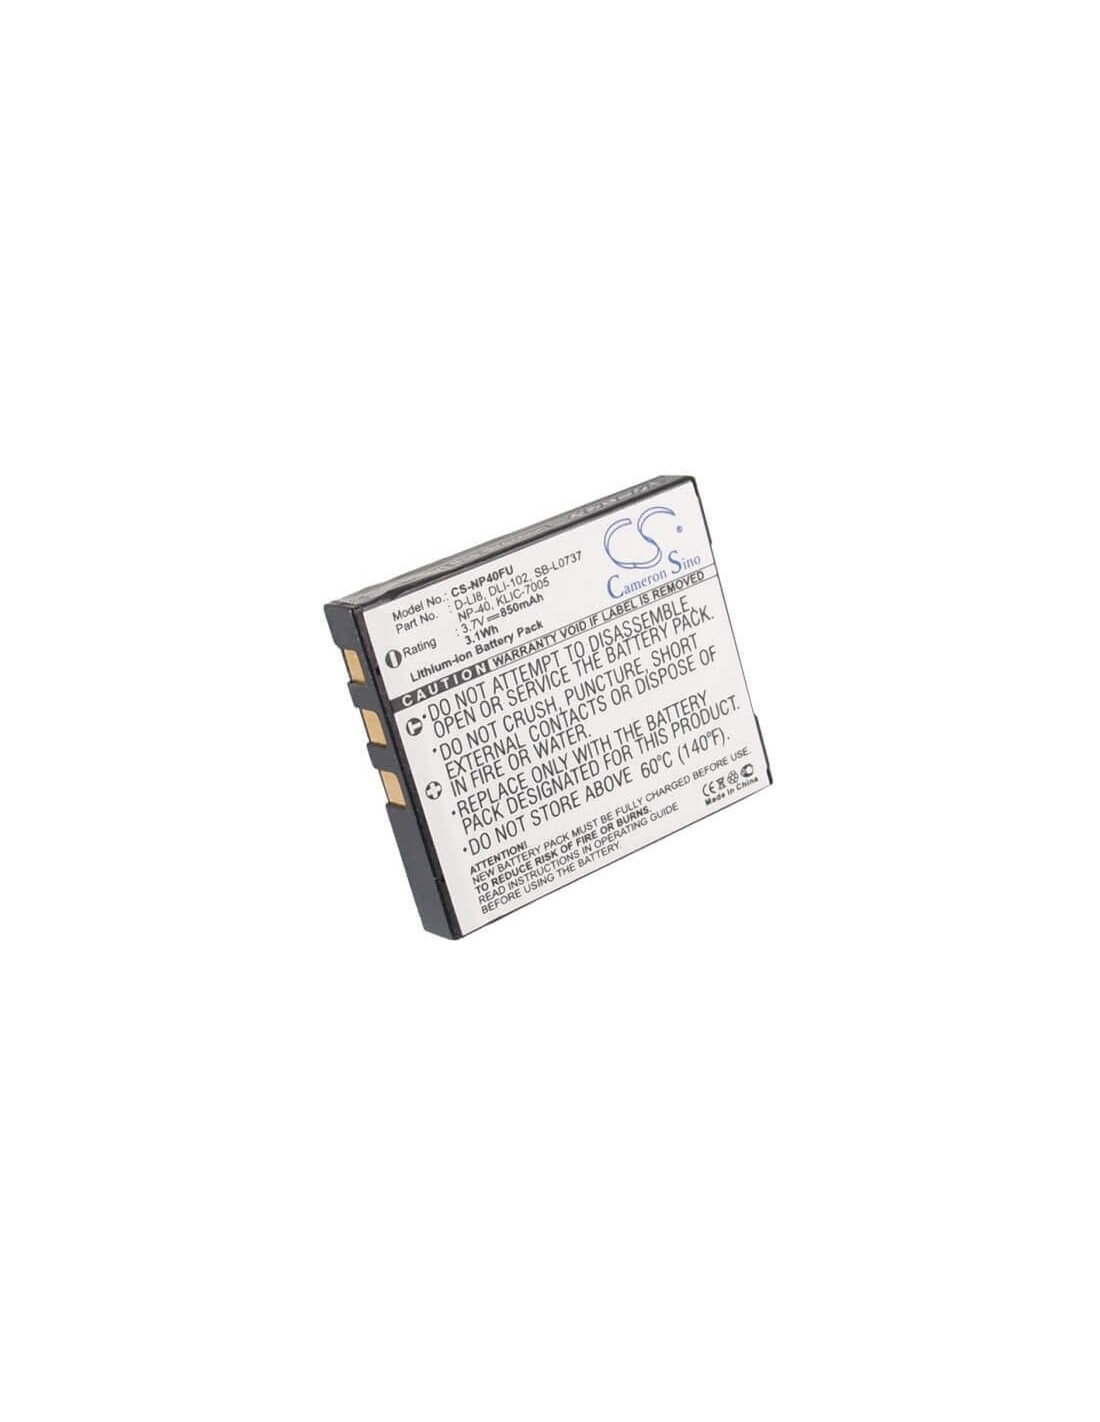 Battery for Easypix Dvc5308, Dvc5308hd, S530, Sdv1200, 3.7V, 850mAh - 3.15Wh